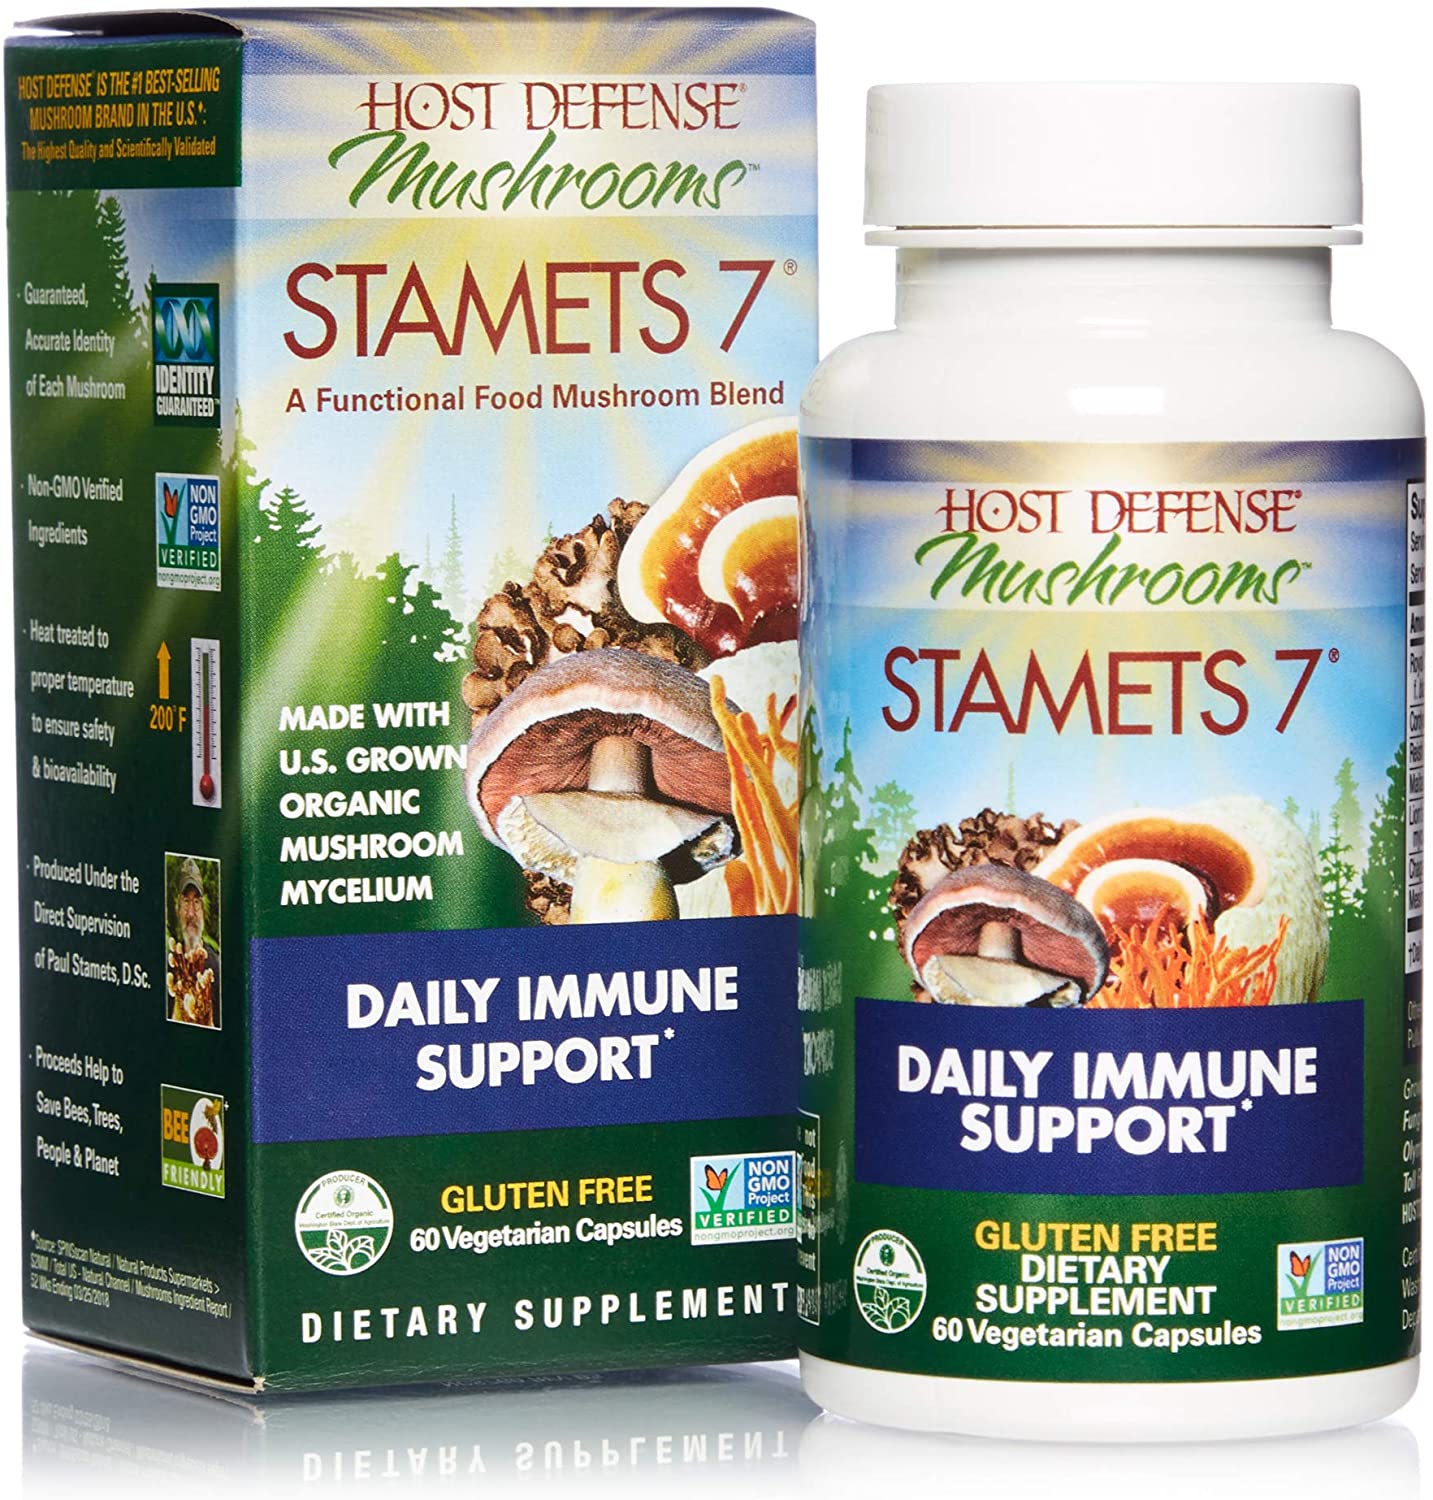 Stamets 7 mélange de champignons aide au soutien immunitaire quotidien - Host Defense